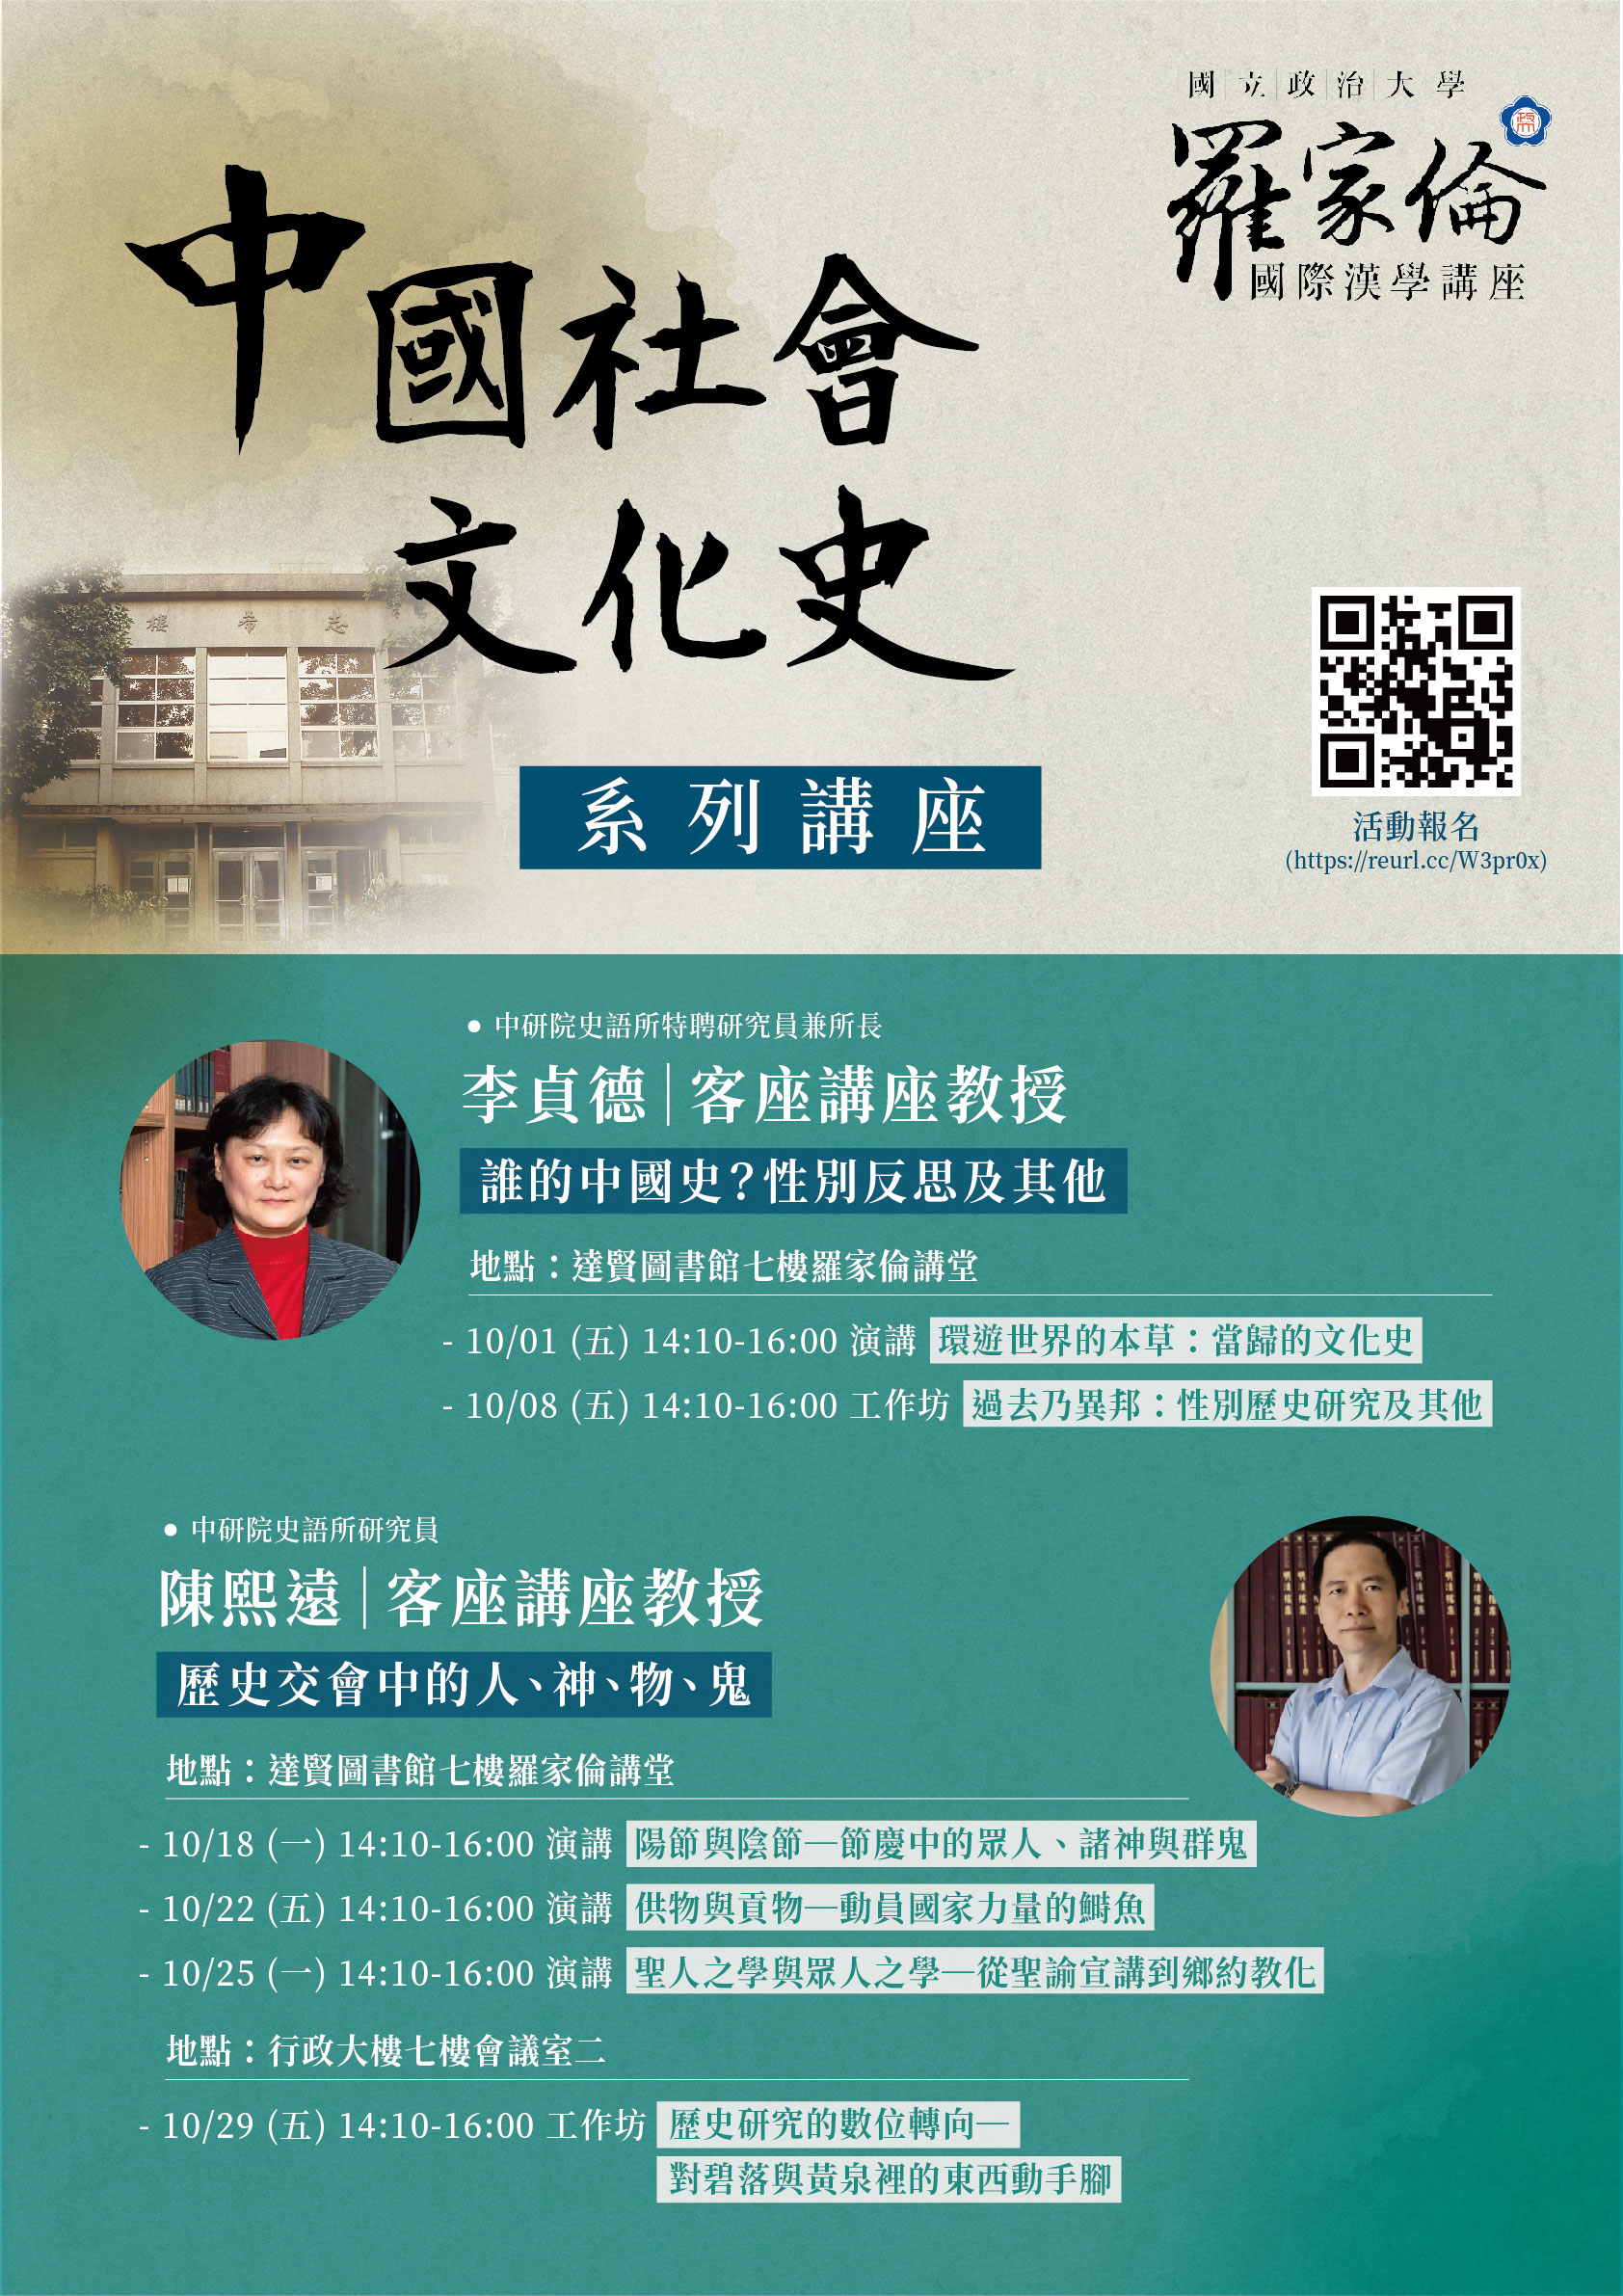 【羅家倫國際漢學講座】「中國社會文化史」系列演講、工作坊 歡迎報名參與